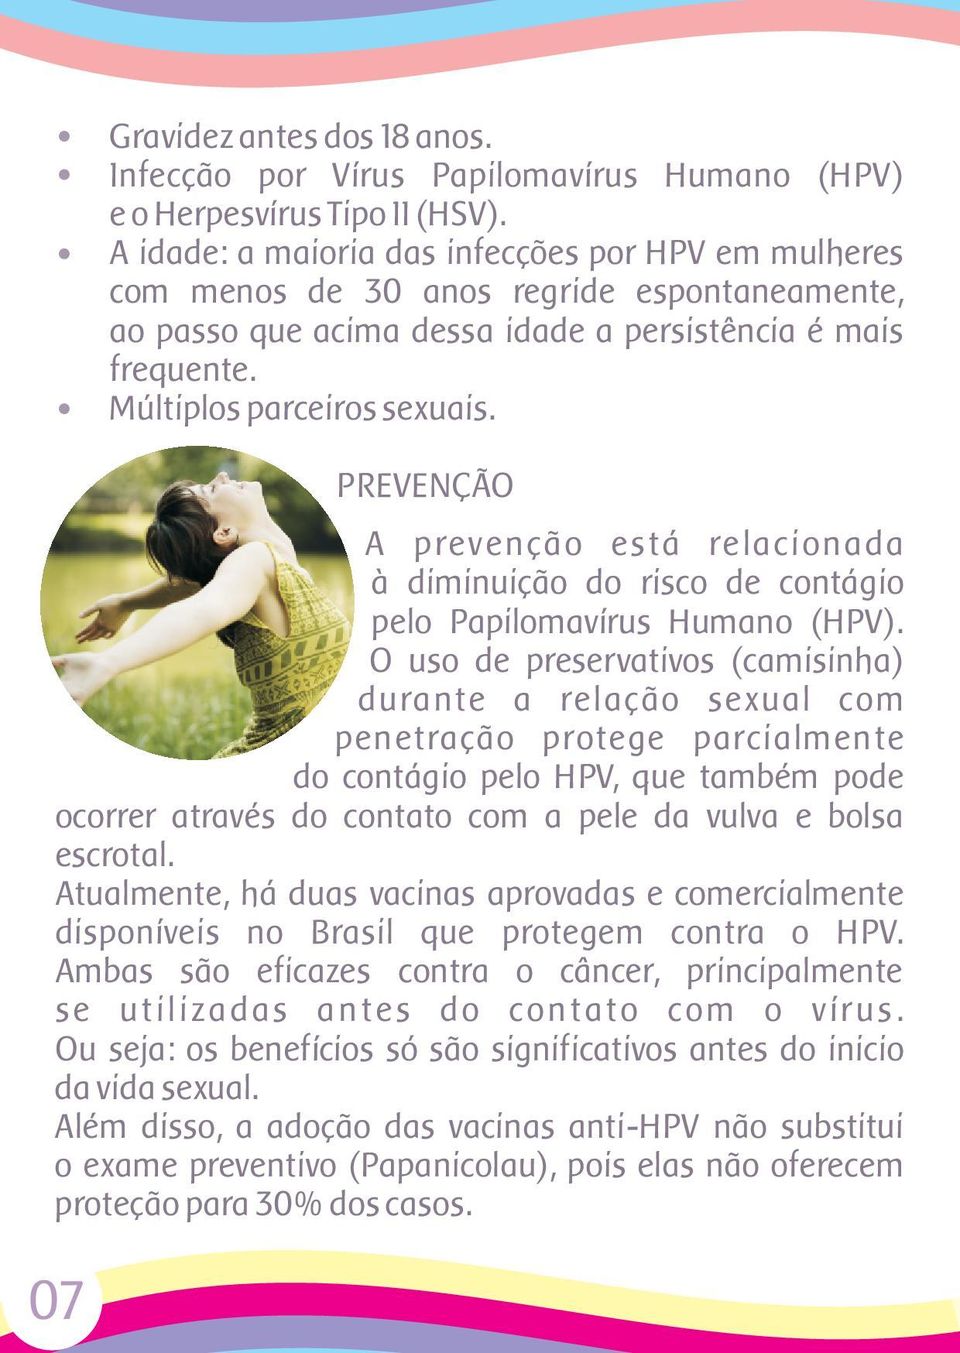 PREVENÇÃO A prevenção está relacionada à diminuição do risco de contágio pelo Papilomavírus Humano (HPV).